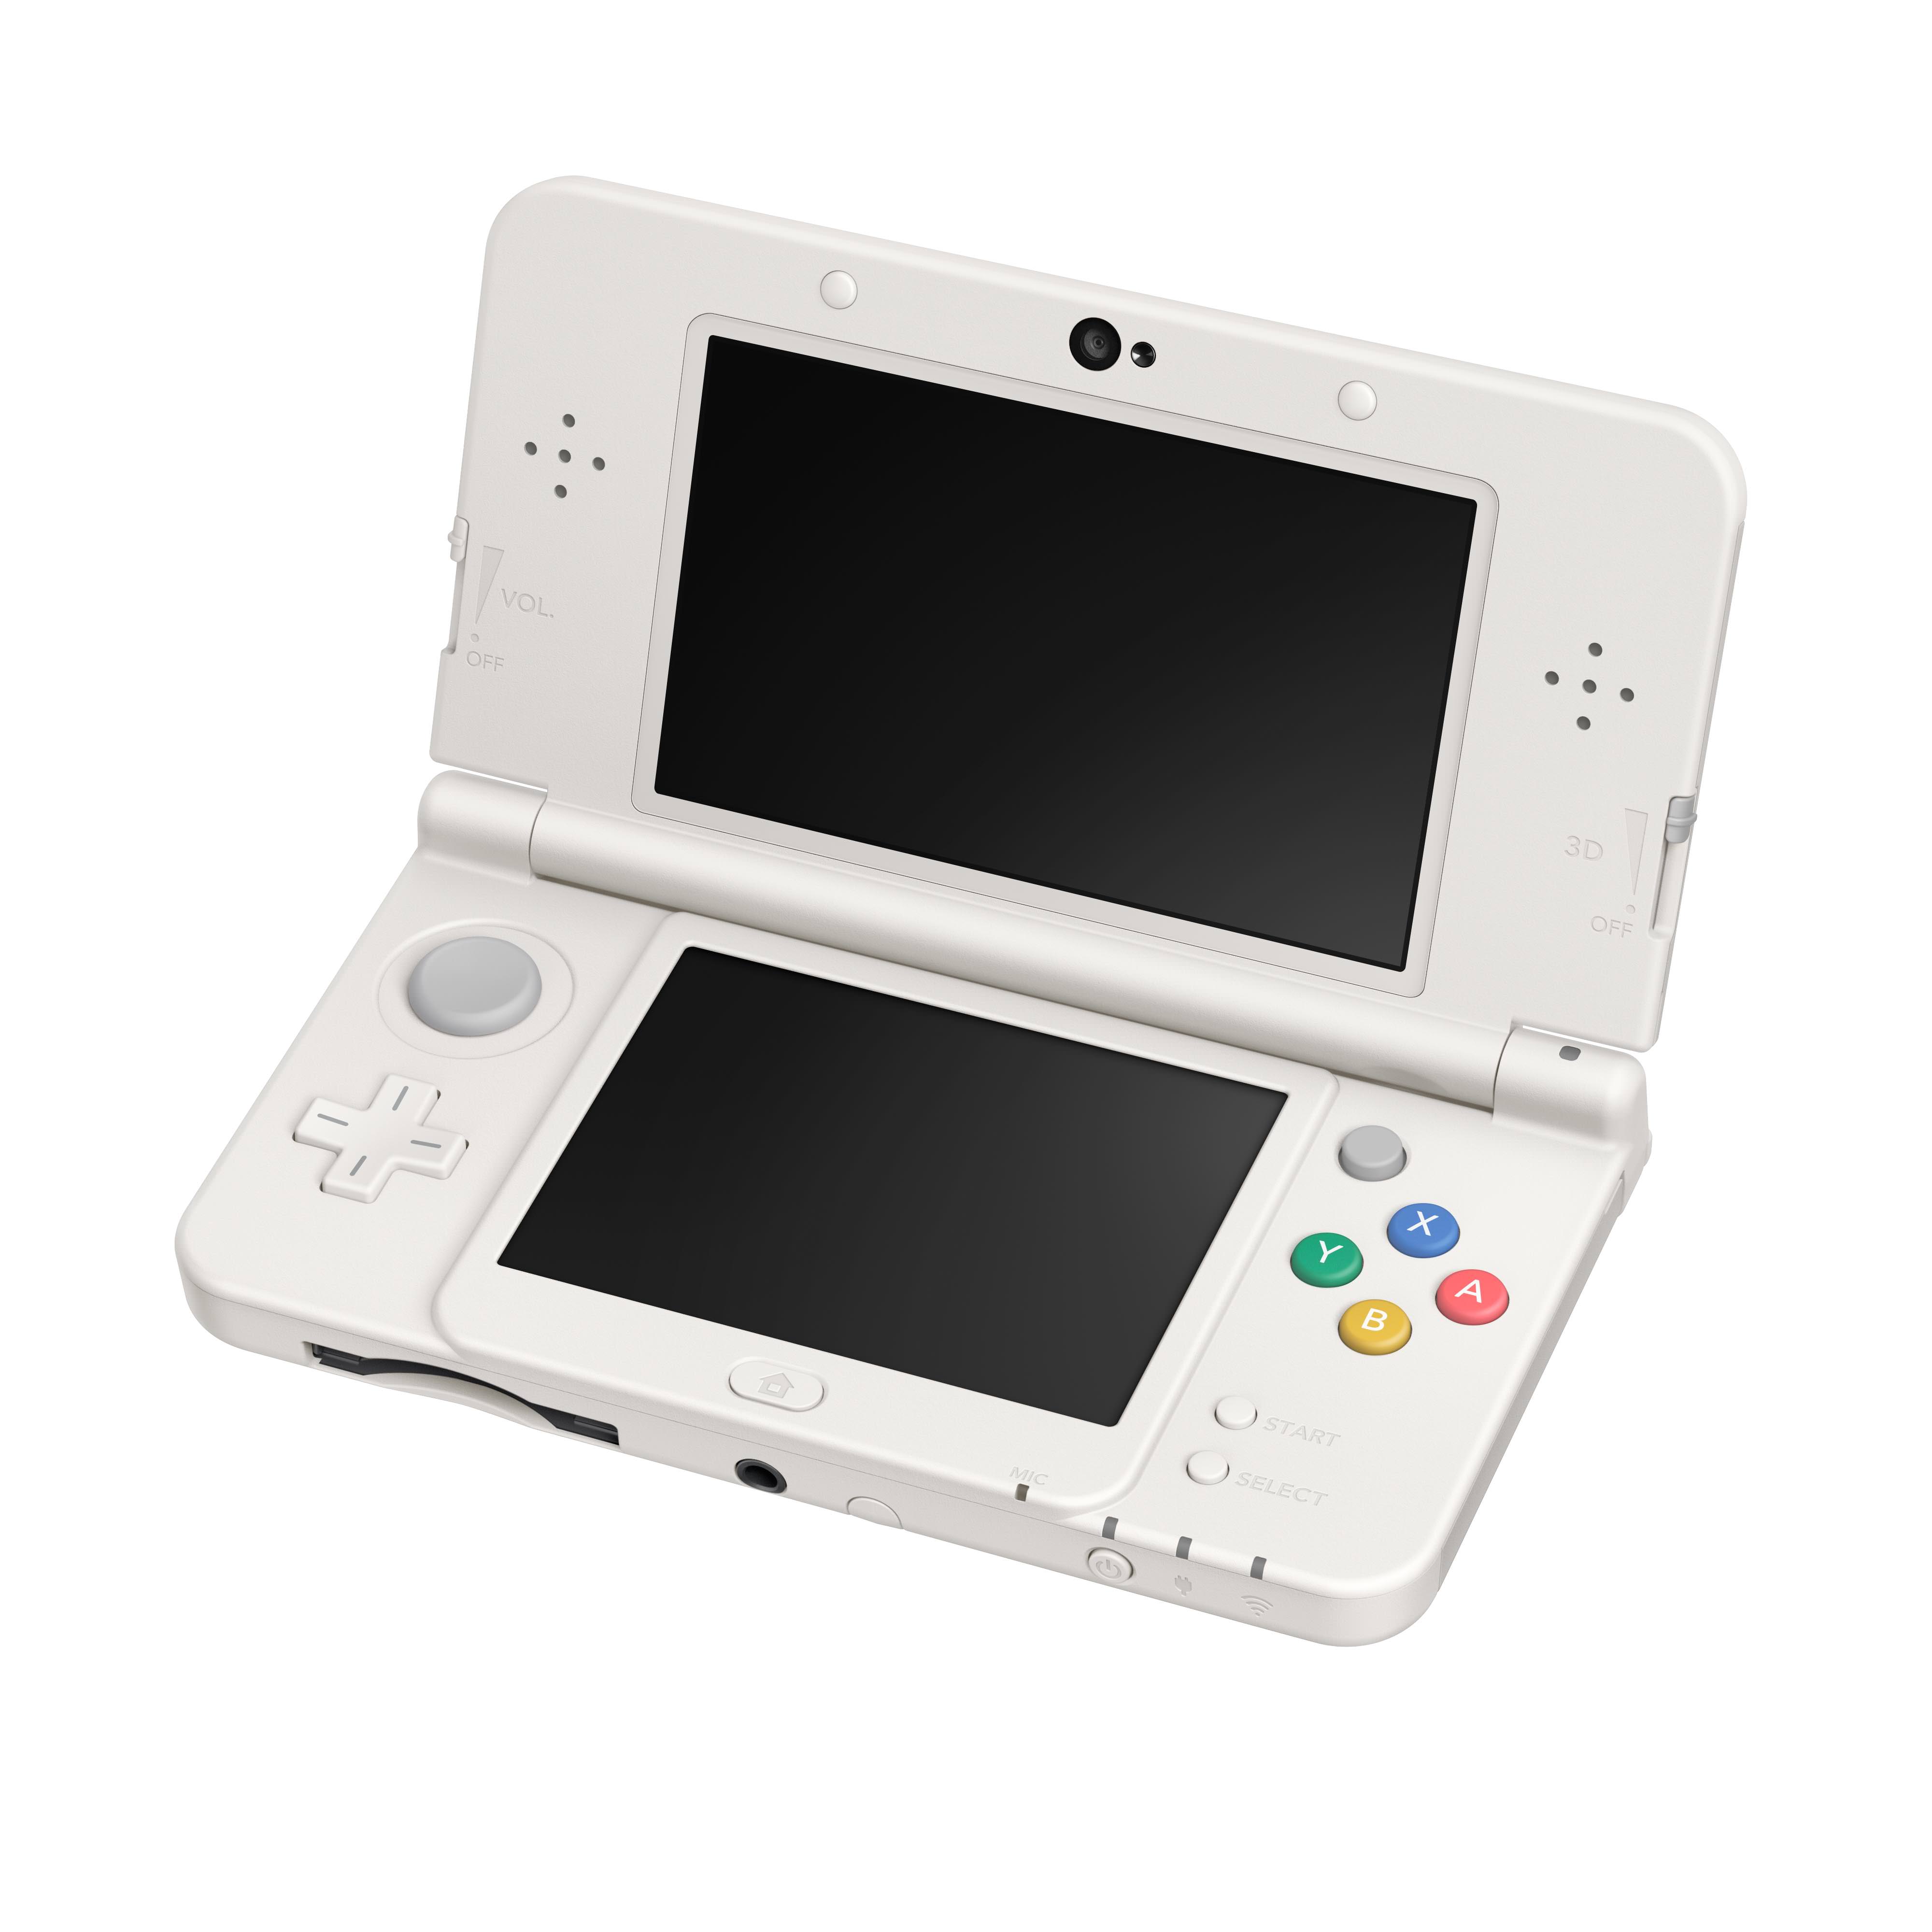 Nintendo no tiene pensado vender la New 3DS estándar de forma individual en Norteamérica